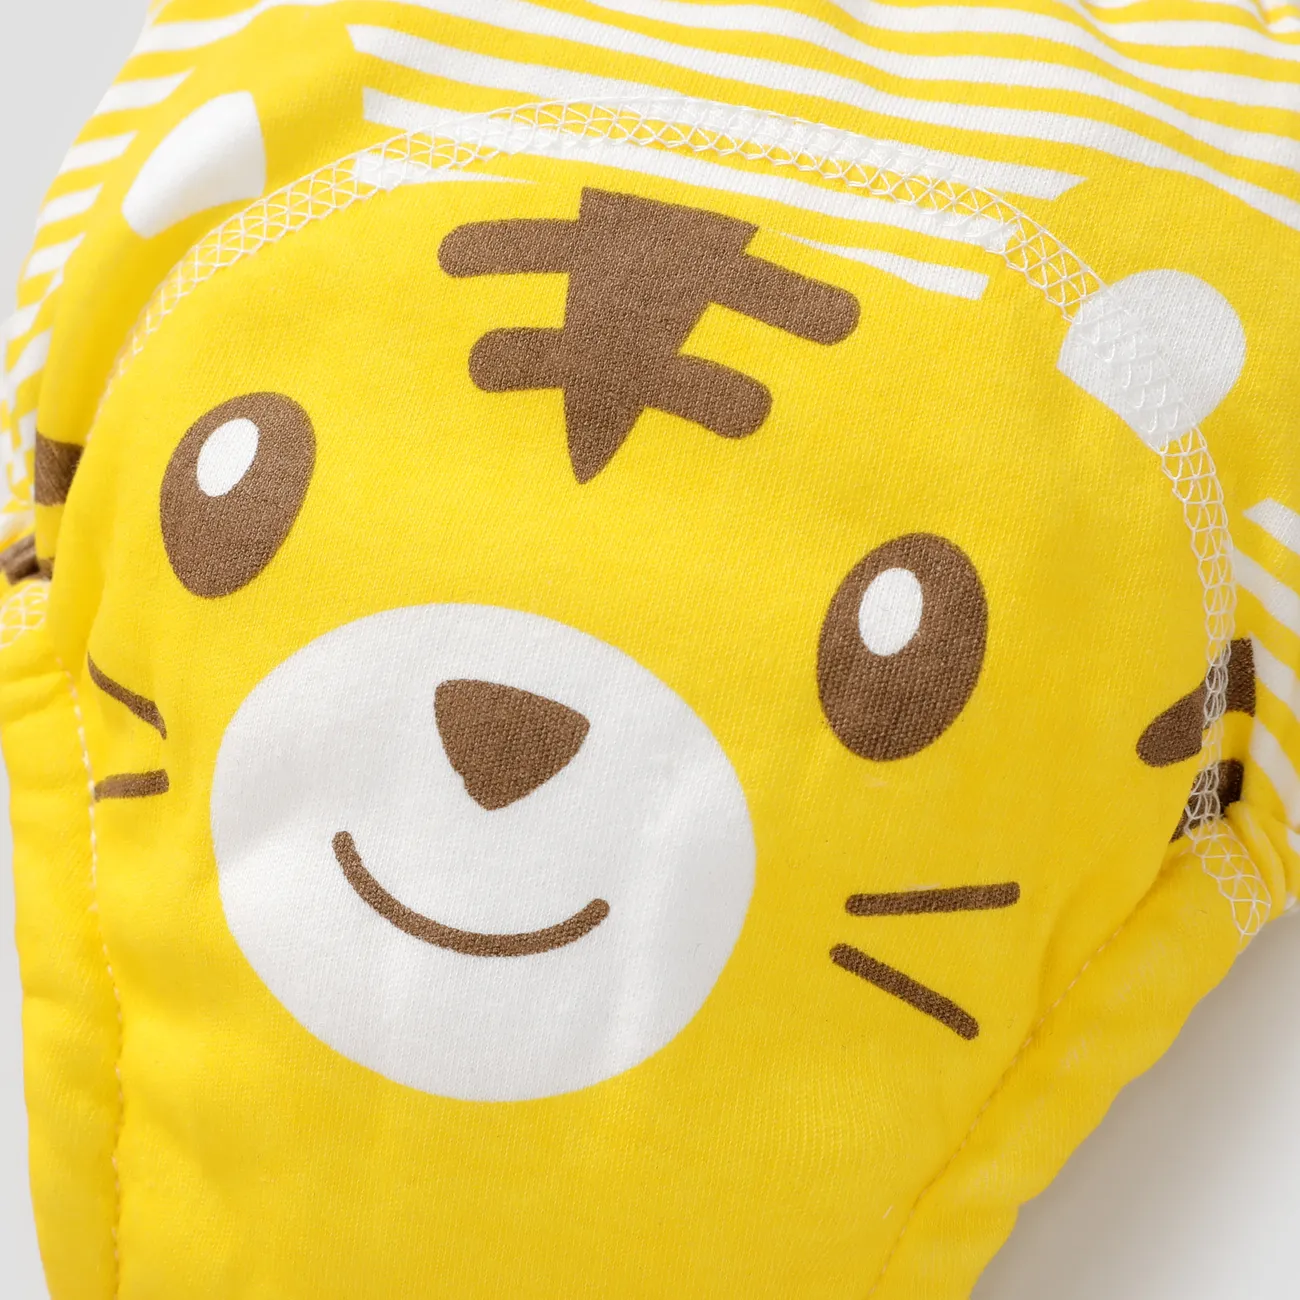 Bebê / Toddler Meninos / Meninas Infantil Animal Pattern Underwear Set Amarelo big image 1